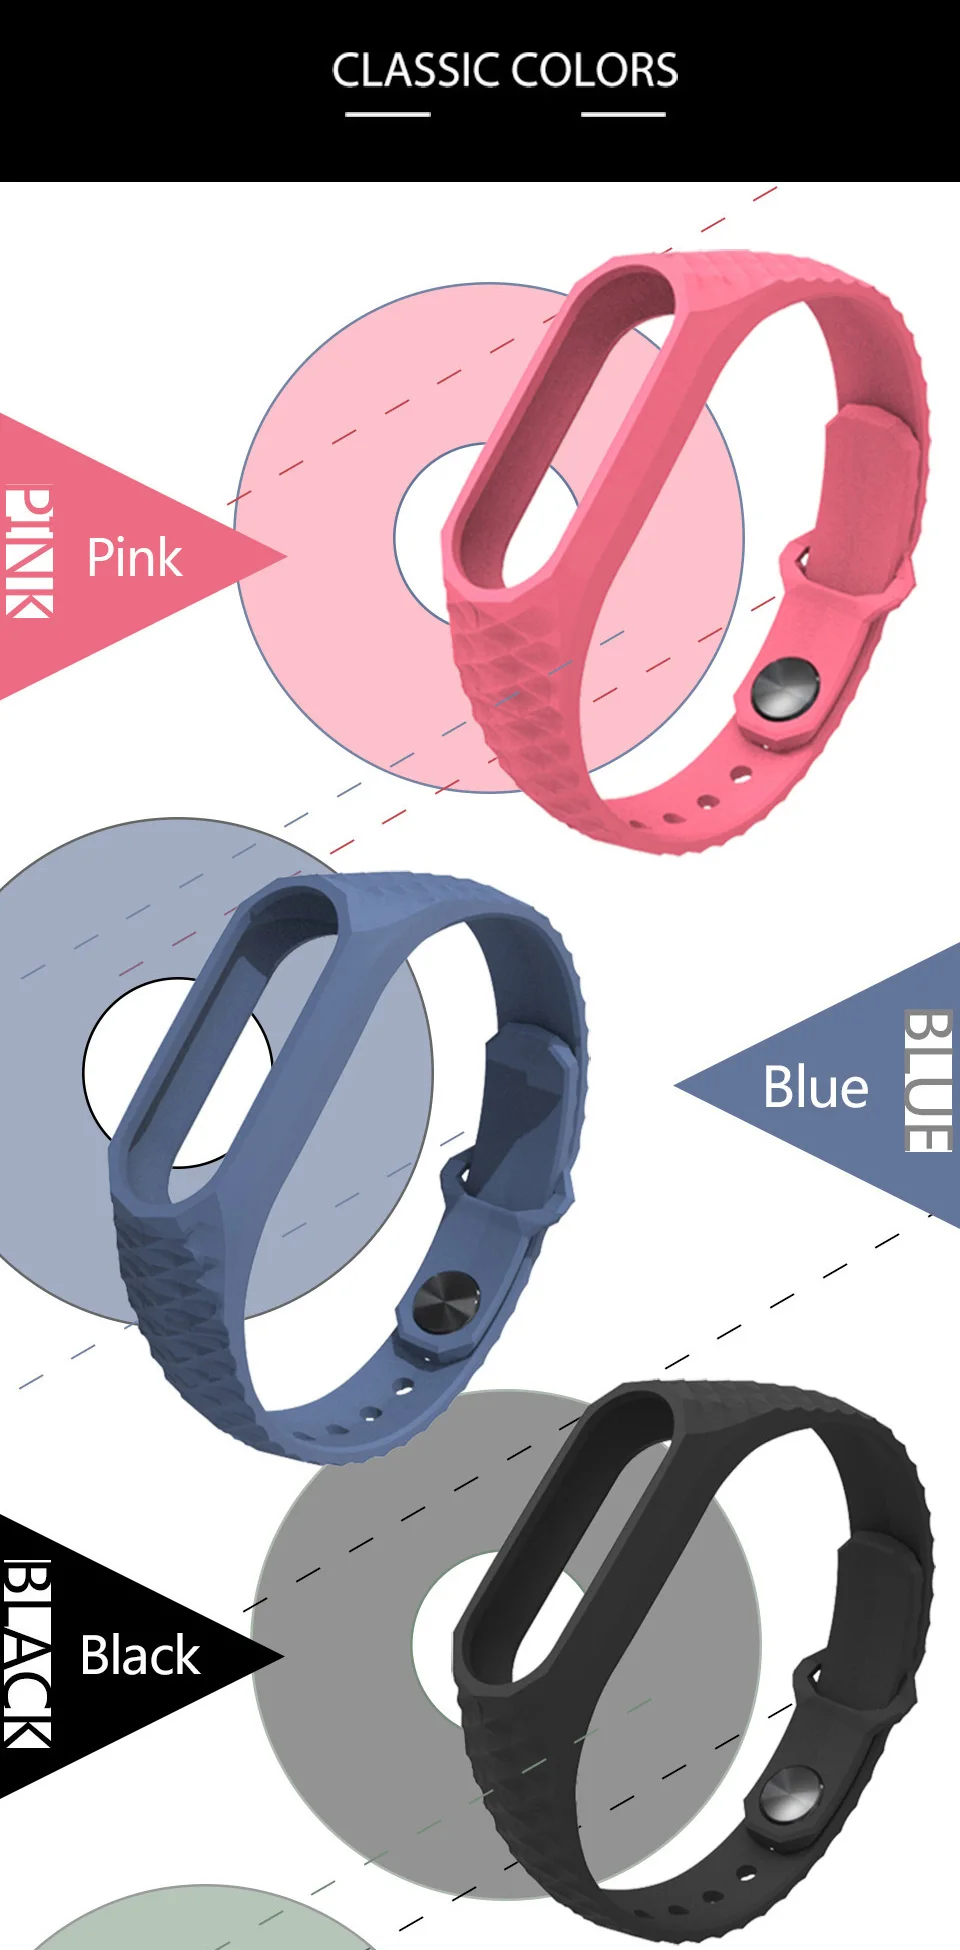 Mi jobs силиконовый браслет Aurora для Xiaomi mi Band 2 ремешок умные часы Сменные аксессуары mi band 2 ремешок на запястье